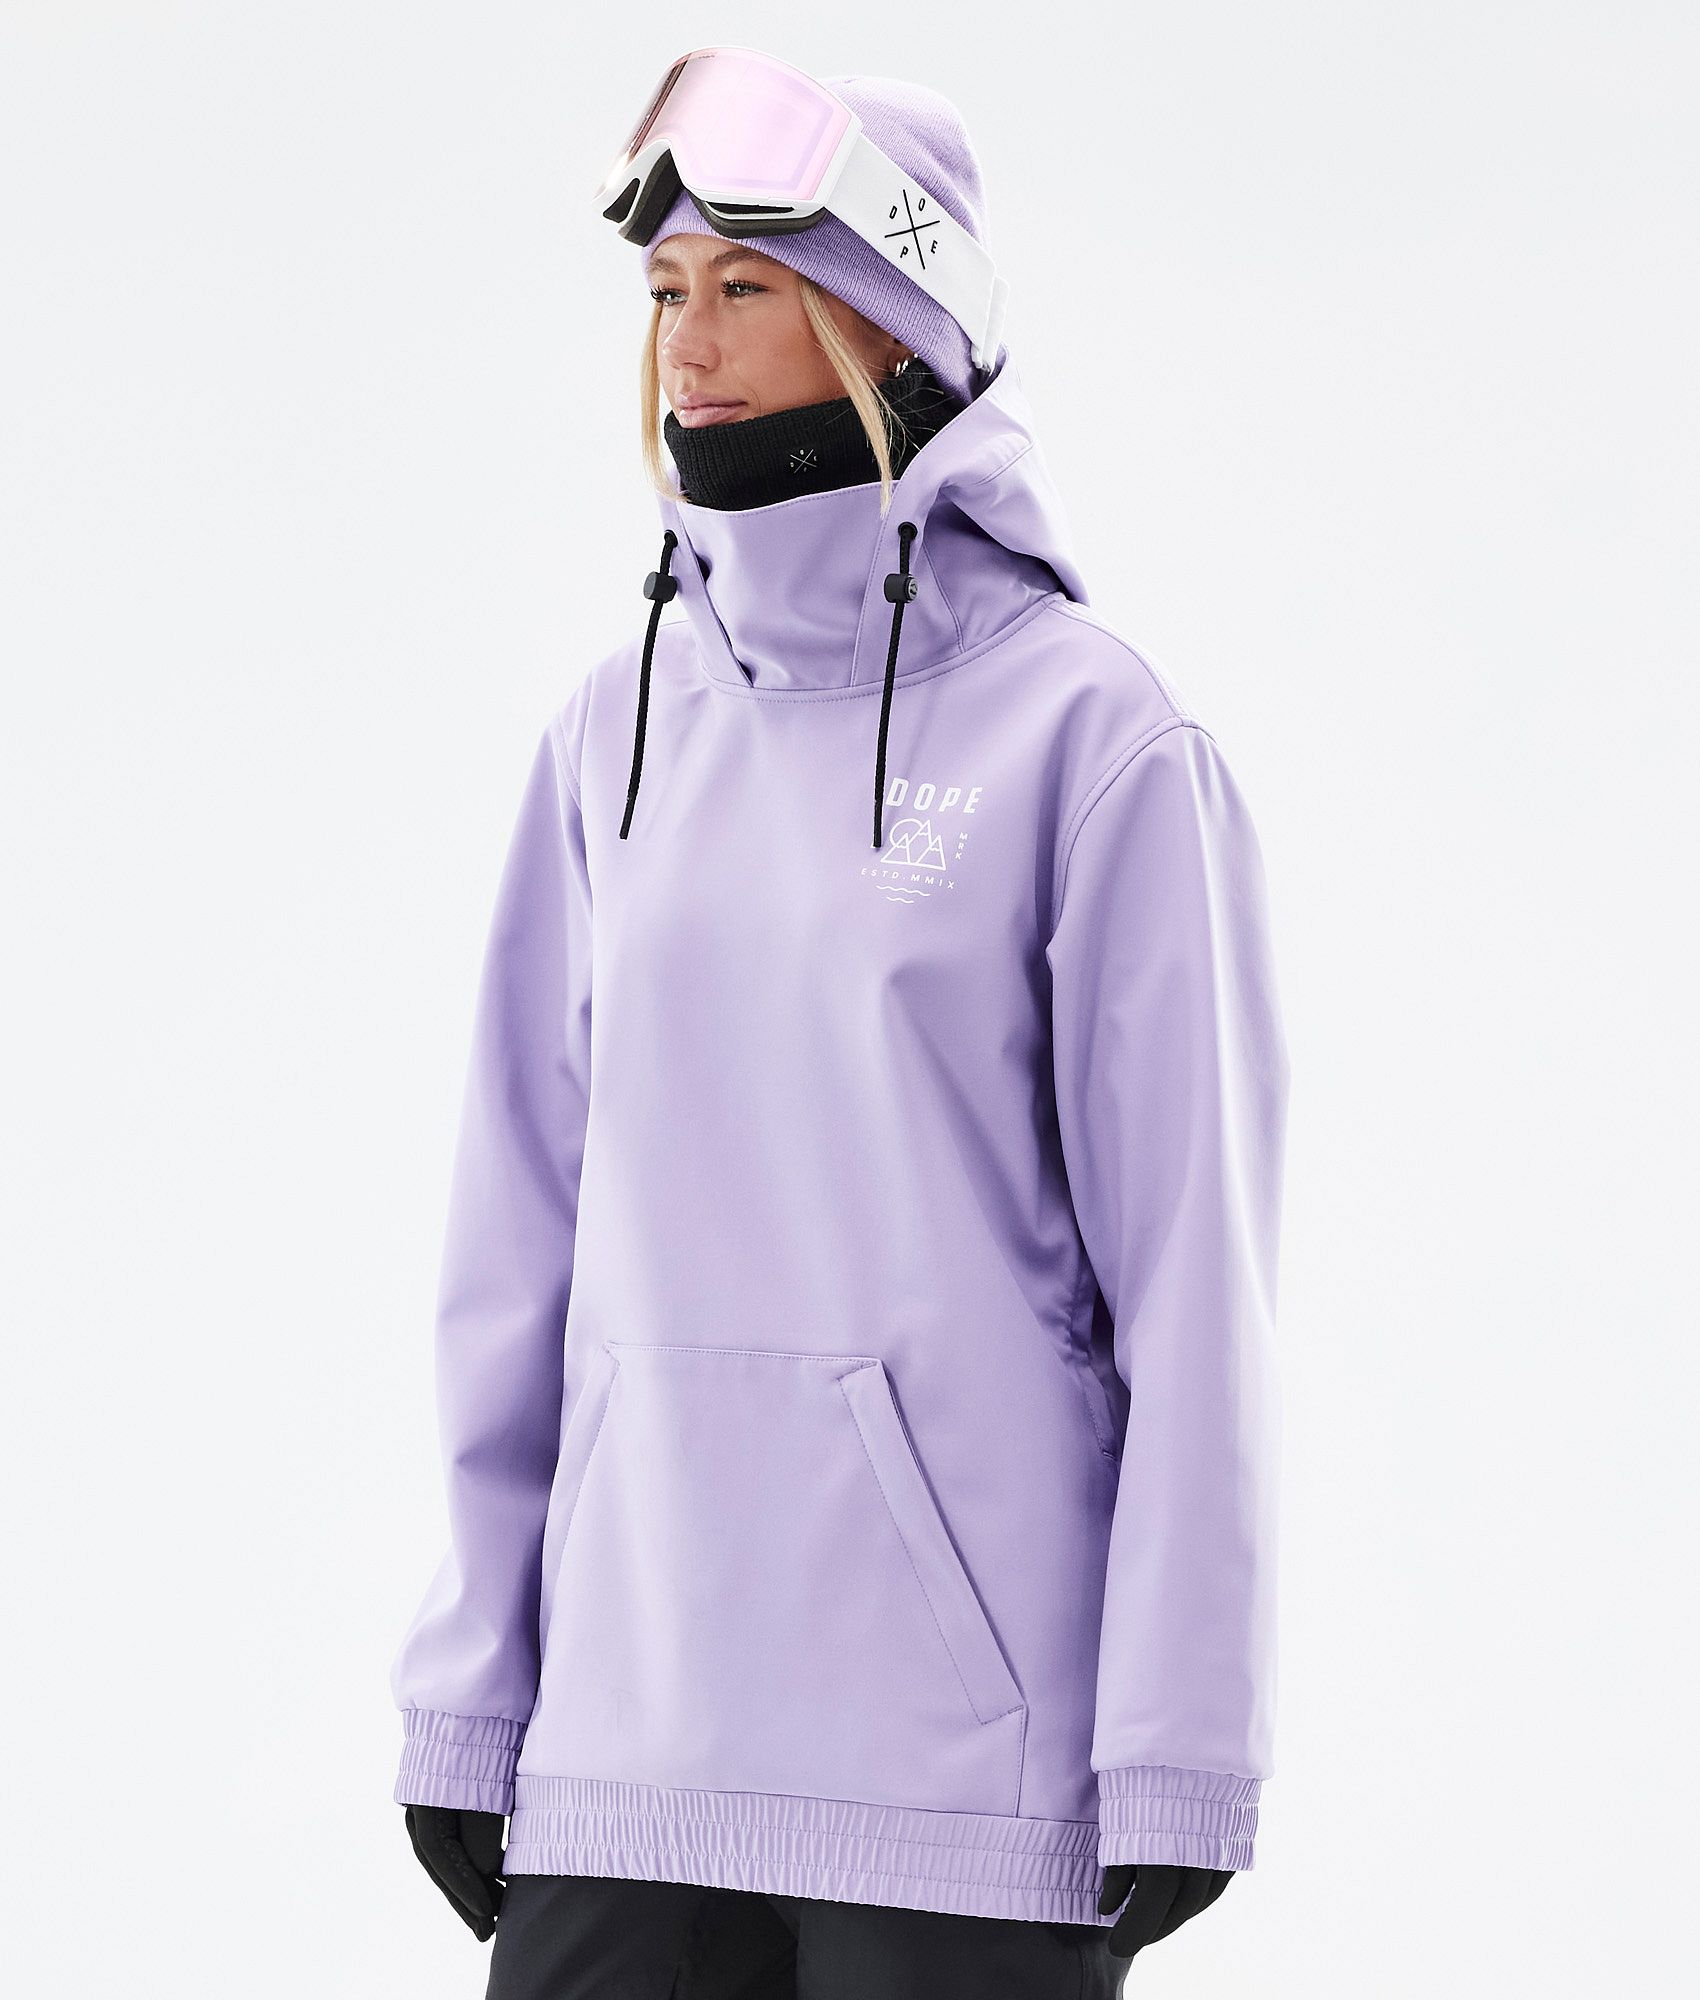 Dope Yeti W 2022 Women's Ski Jacket Faded Violet